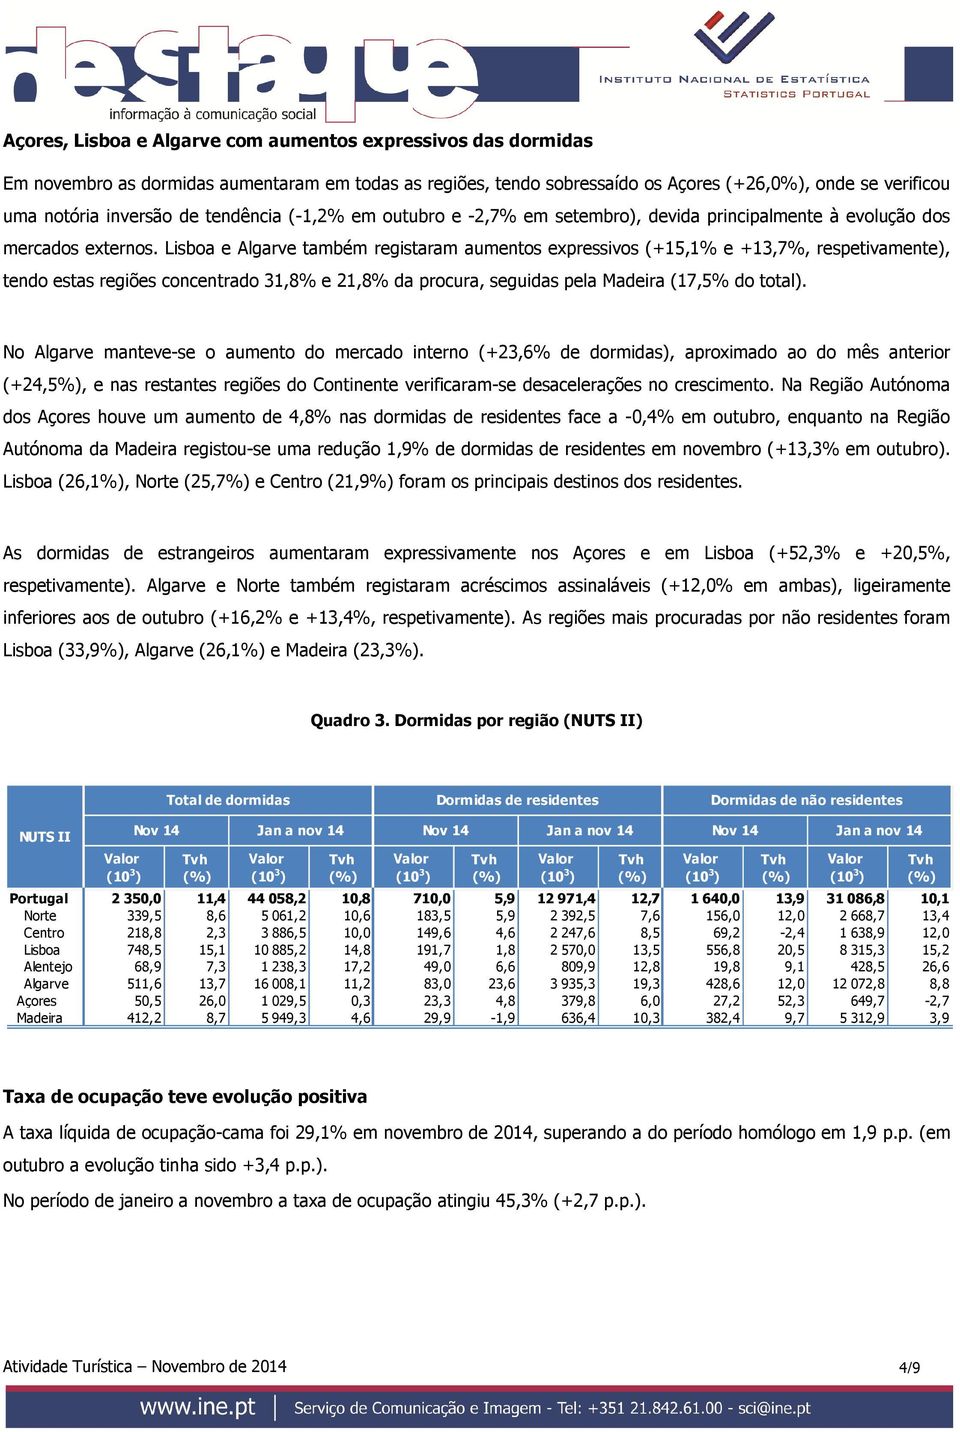 Lisboa e Algarve também registaram aumentos expressivos (+15,1% e +13,7%, respetivamente), tendo estas regiões concentrado 31,8% e 21,8% da procura, seguidas pela Madeira (17,5% do total).